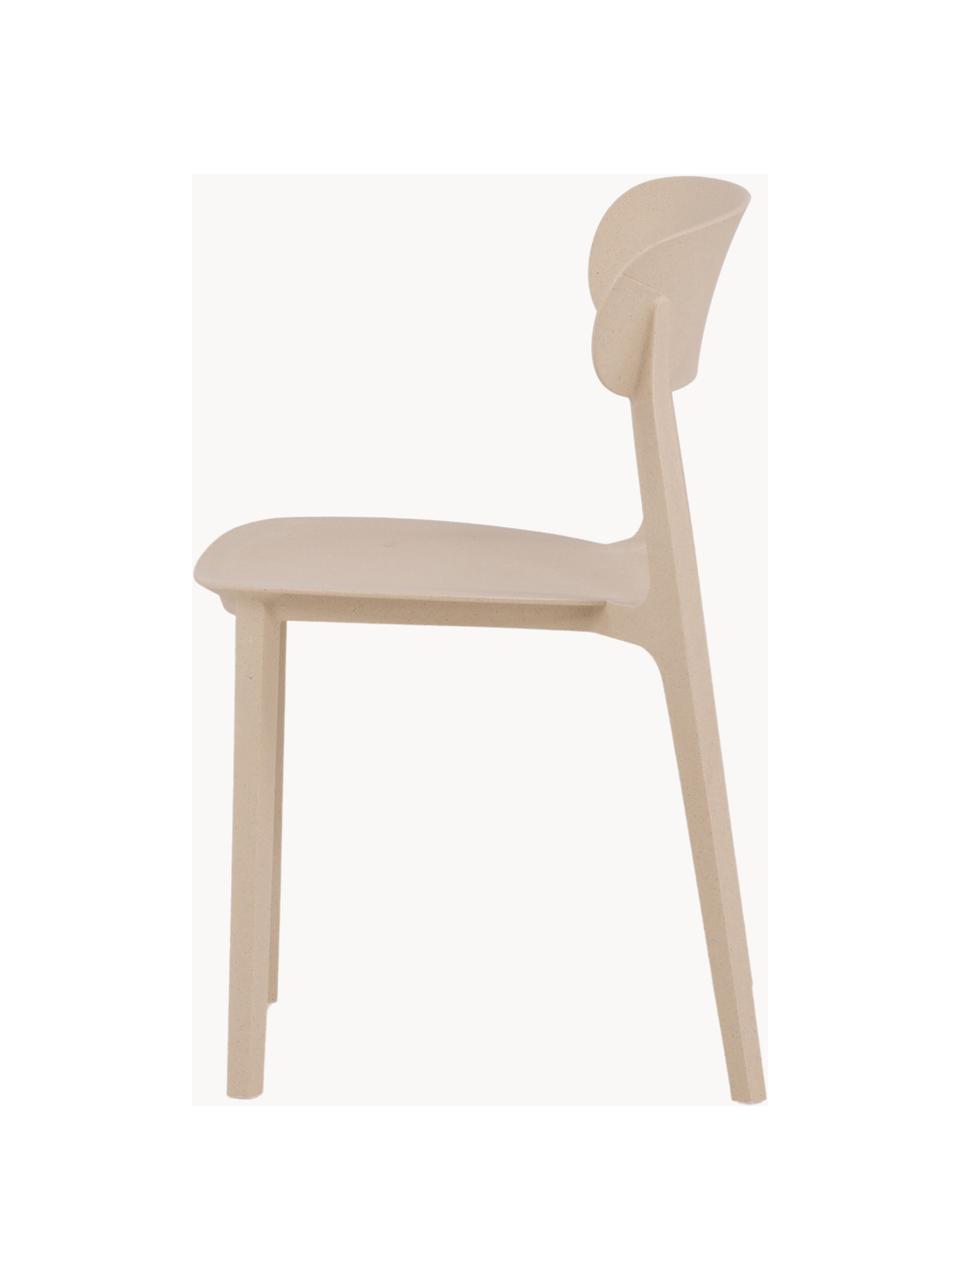 Kunststoffstuhl Åstol, Kunststoff, Beige, B 50 x H 79 cm